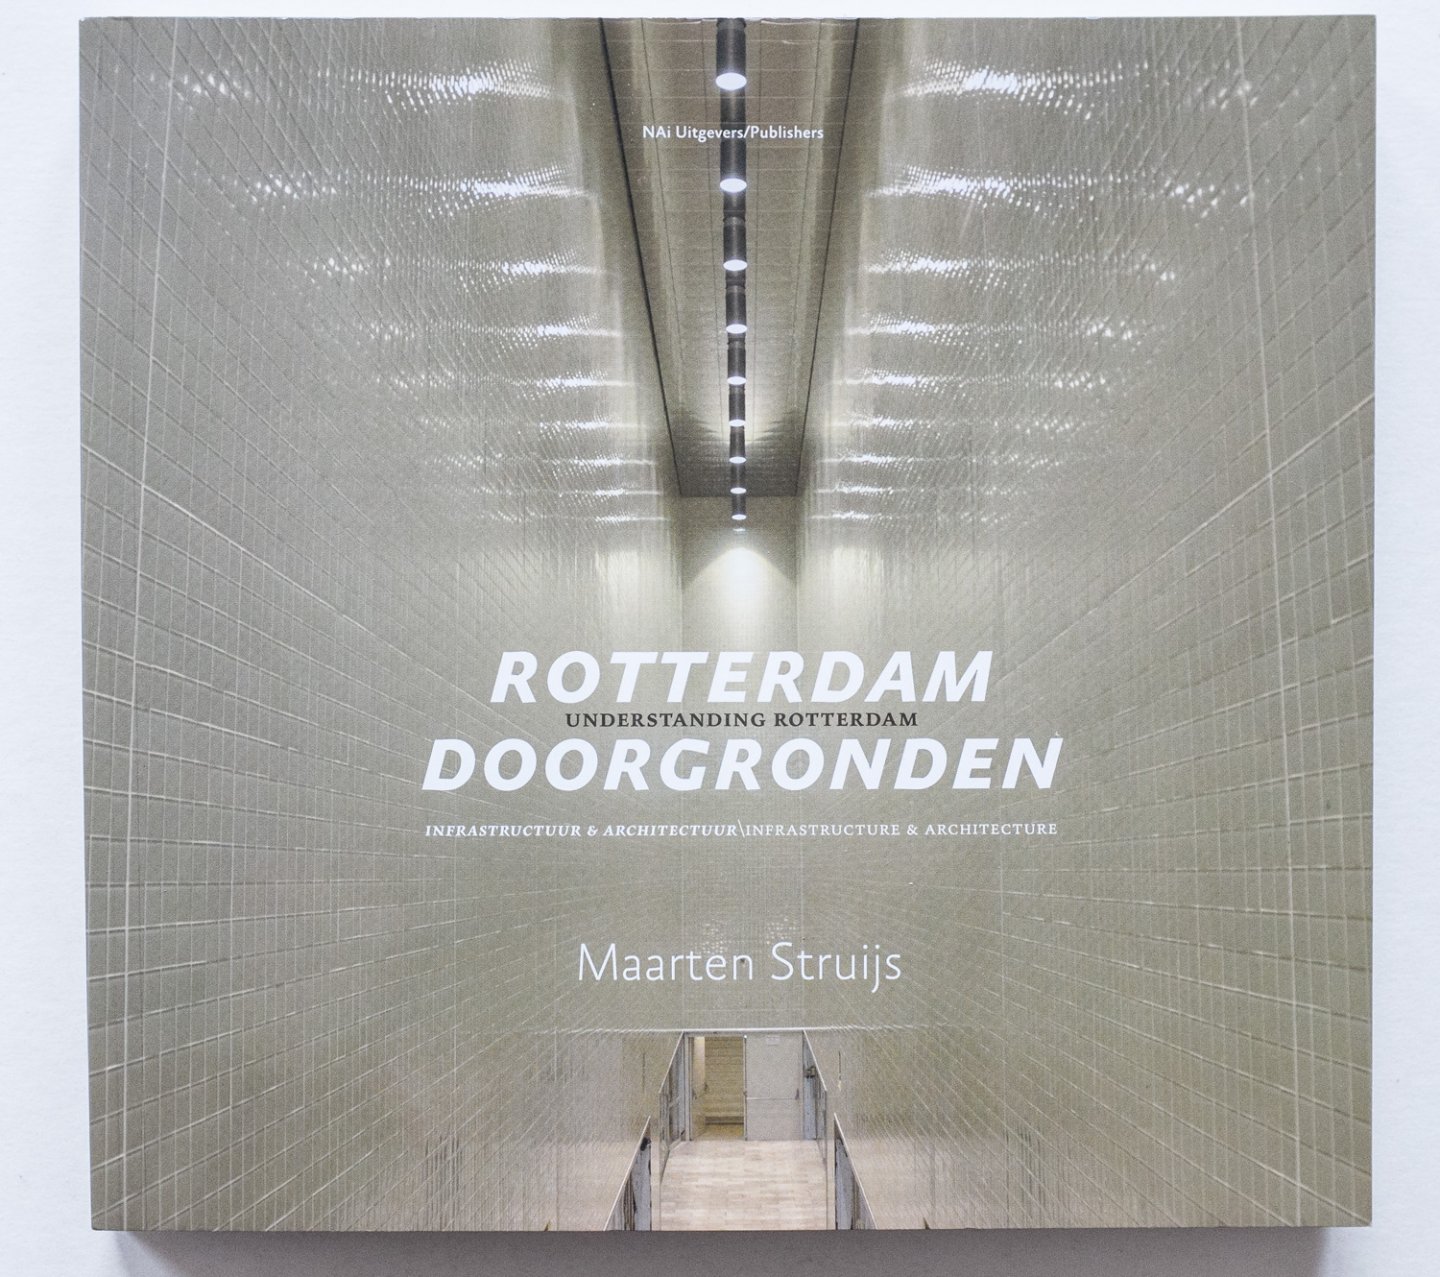 Struijs, Maarten - Rotterdam doorgronden infrastrucuur & architectuur - Understanding Rotterdam infrastructure & architecture